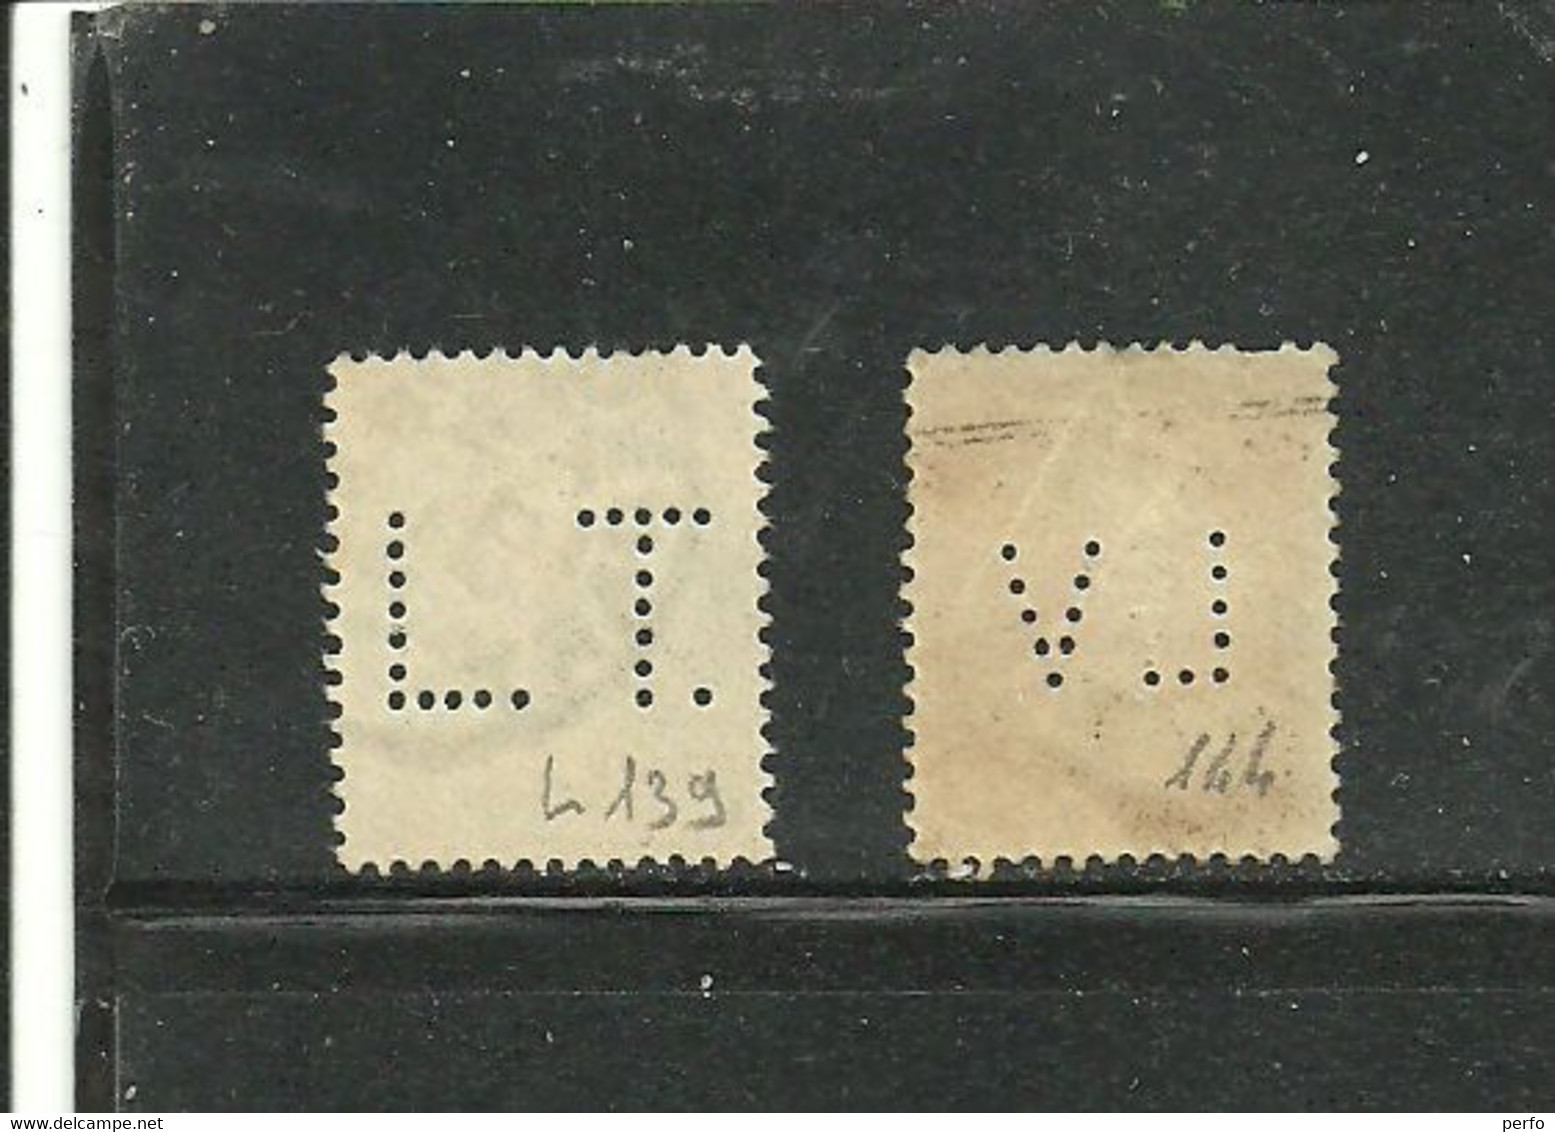 Perforés   LT Et LV  Indice  6  Bon Centrage - Used Stamps